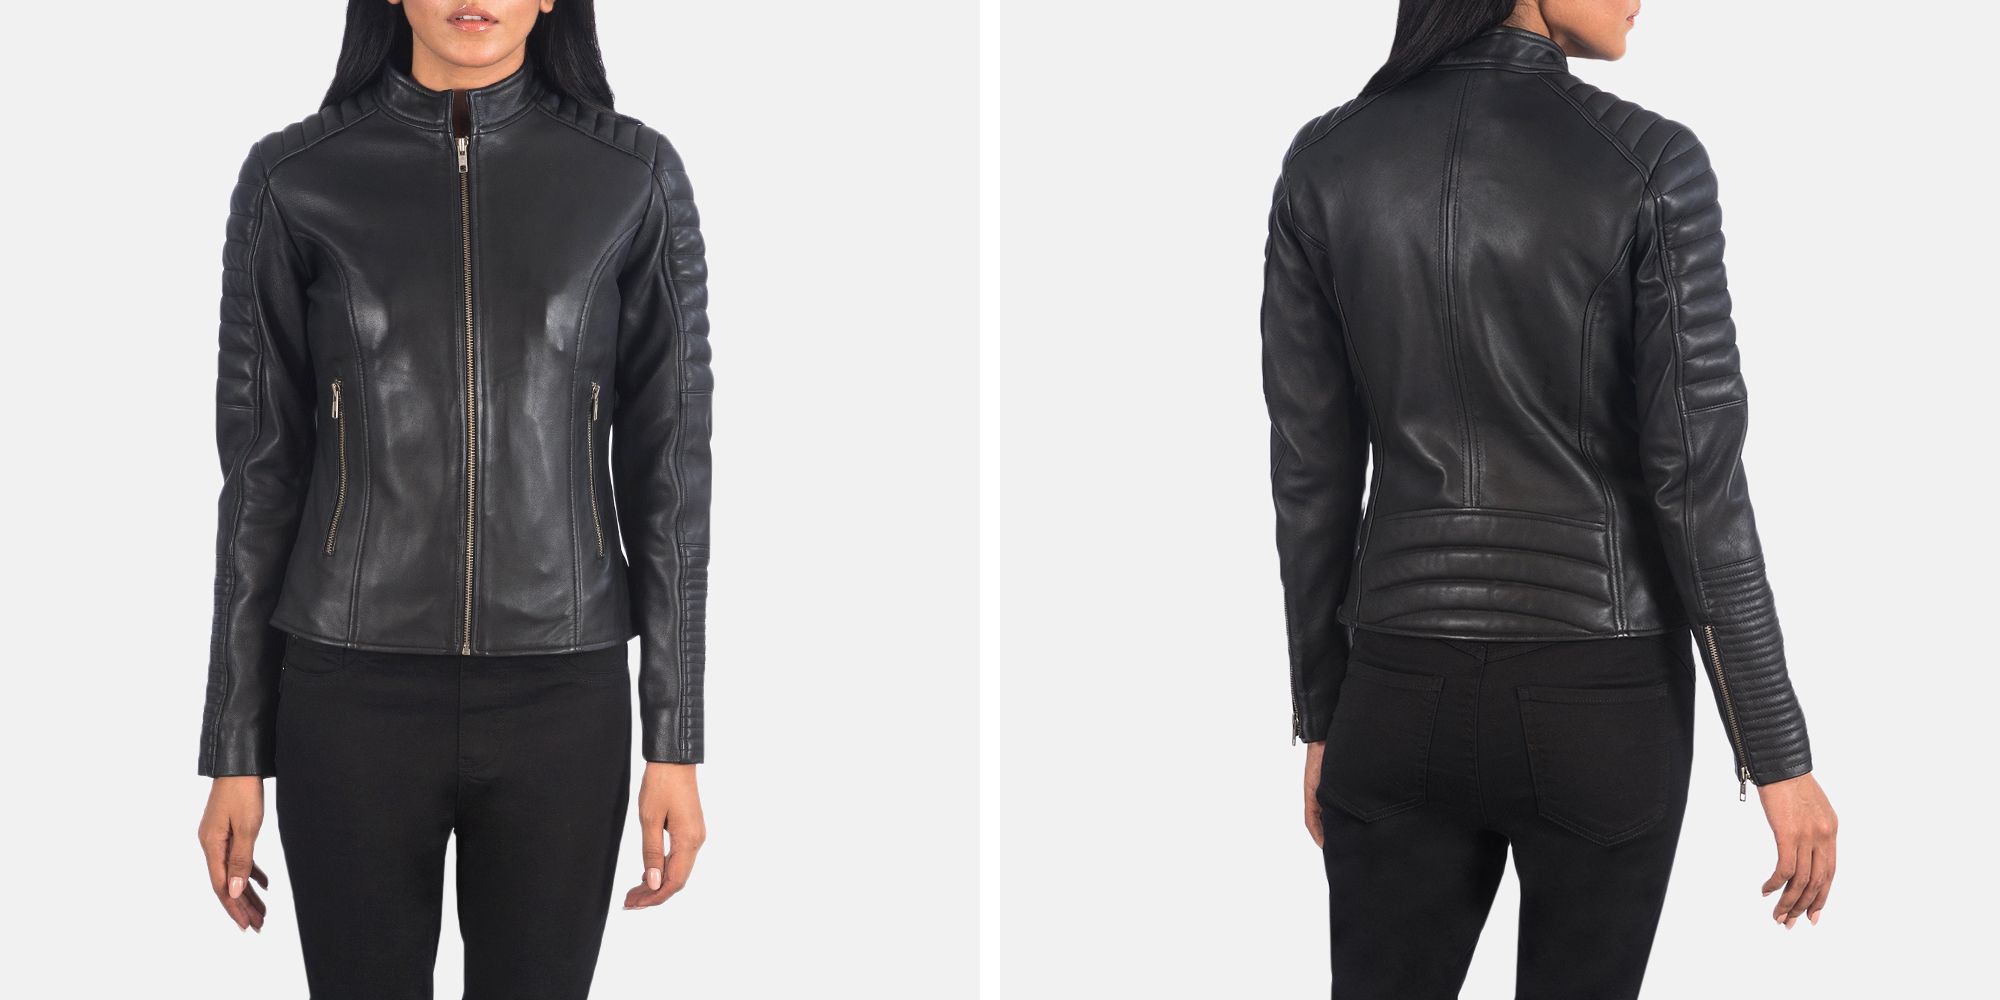 Adalyn Quilted Black Leather Biker Jacket | The Jacket Maker